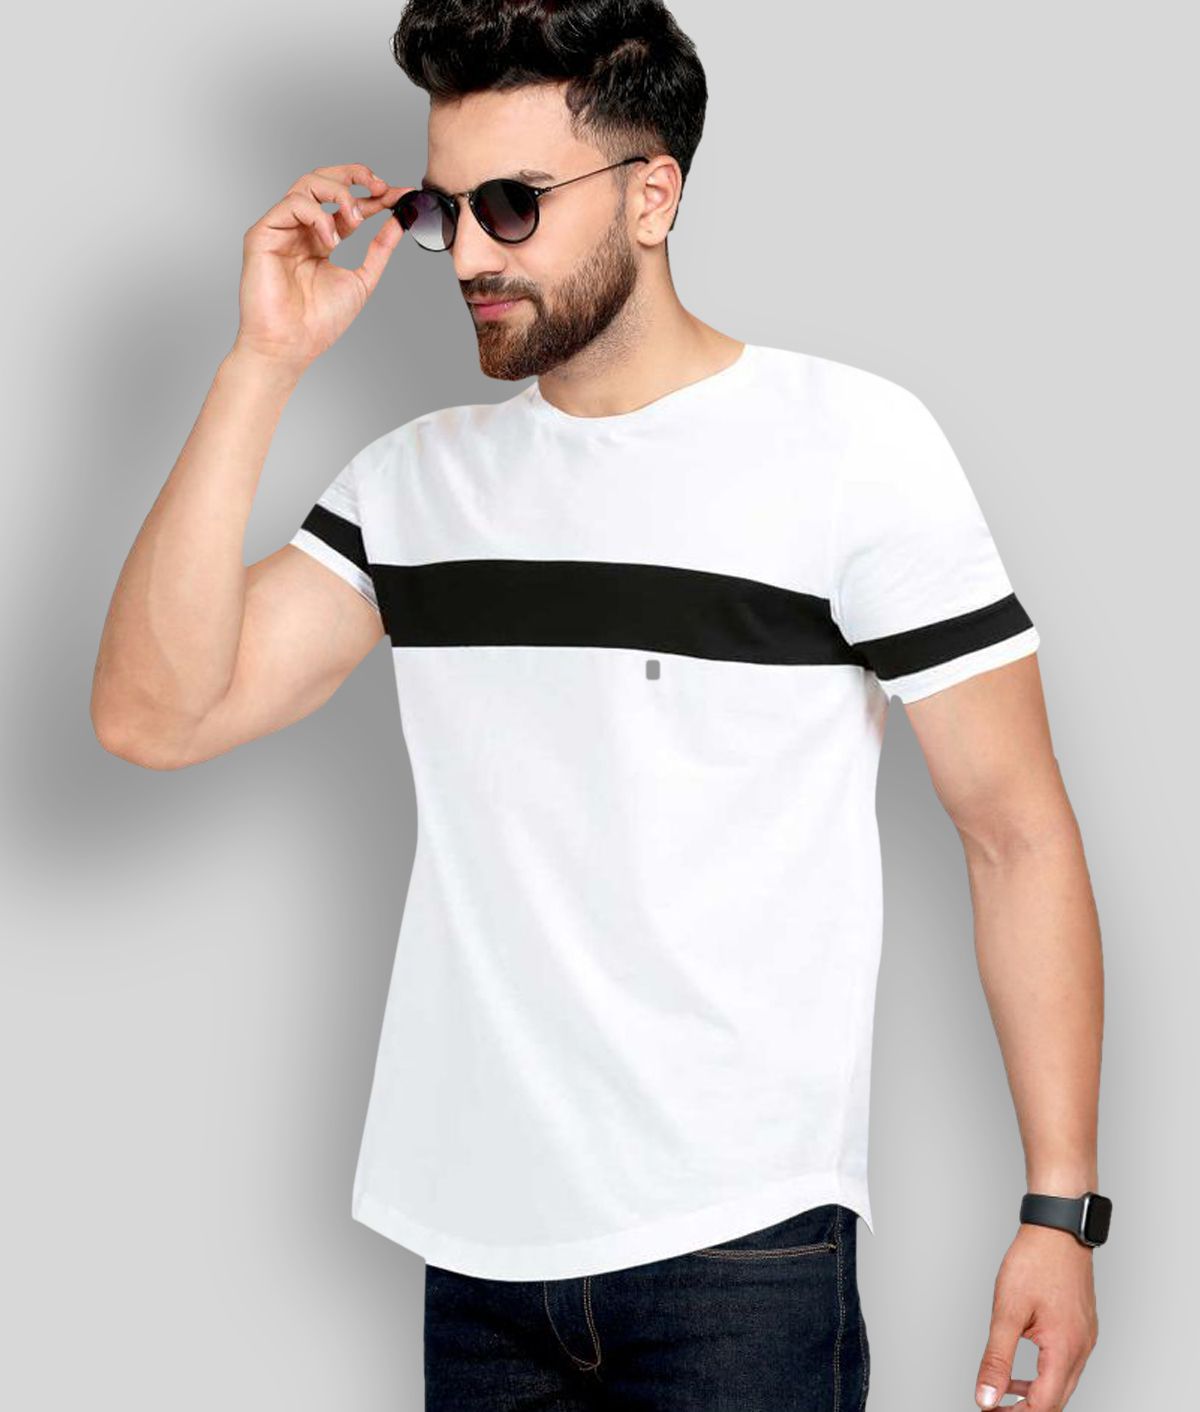     			AUSK - White Cotton Regular Fit Men's T-Shirt ( Pack of 1 )